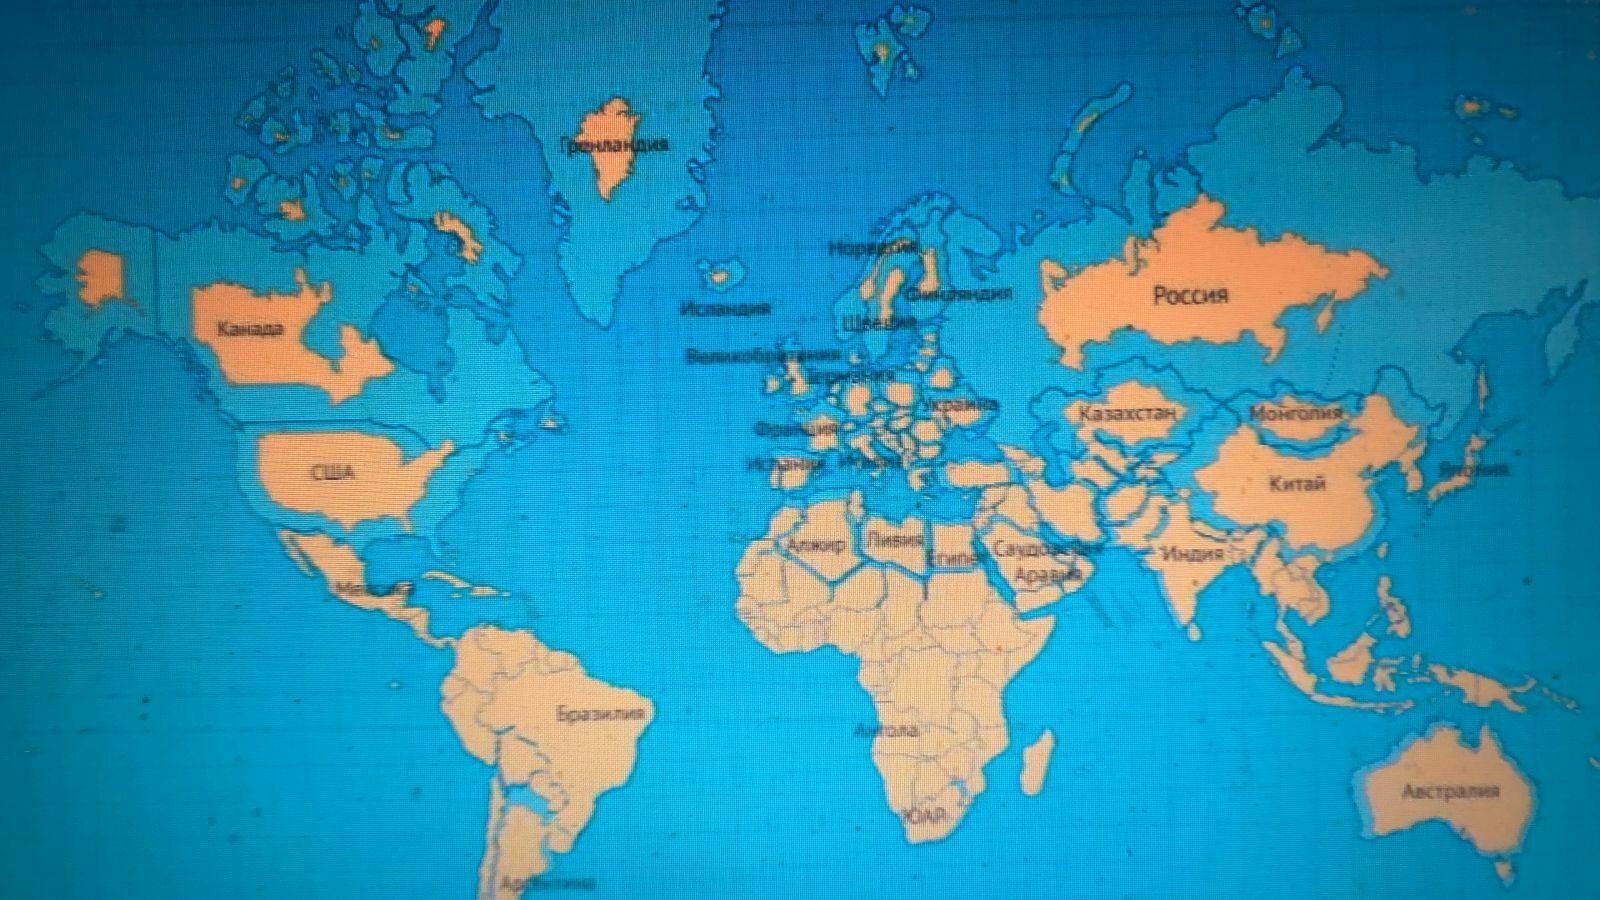 Шокирующие пропорции: как в реальности должна выглядеть Россия на картах мира